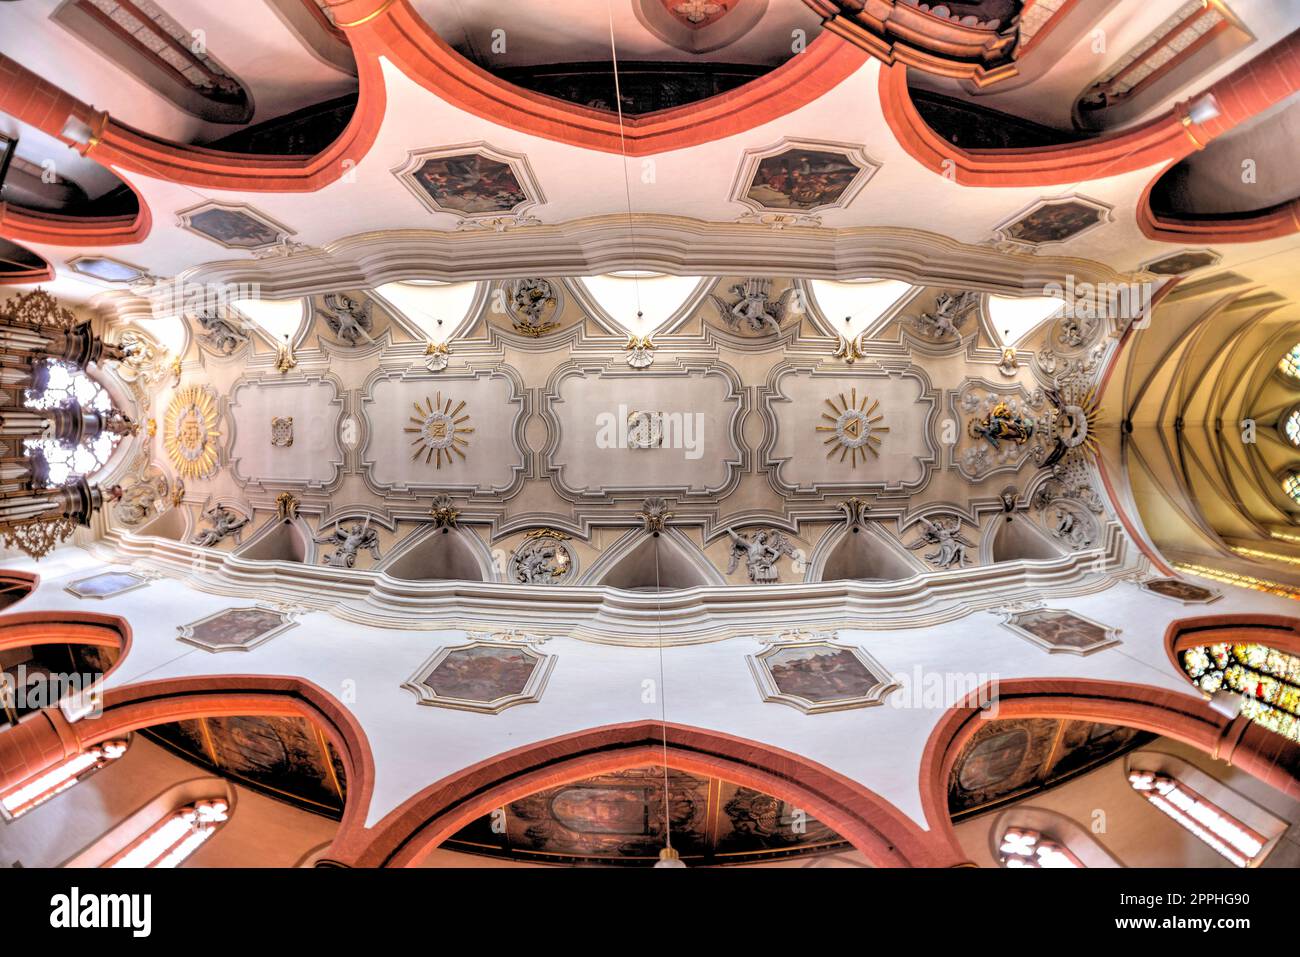 Photographie œil de poisson du plafond de l'église gothique Banque D'Images